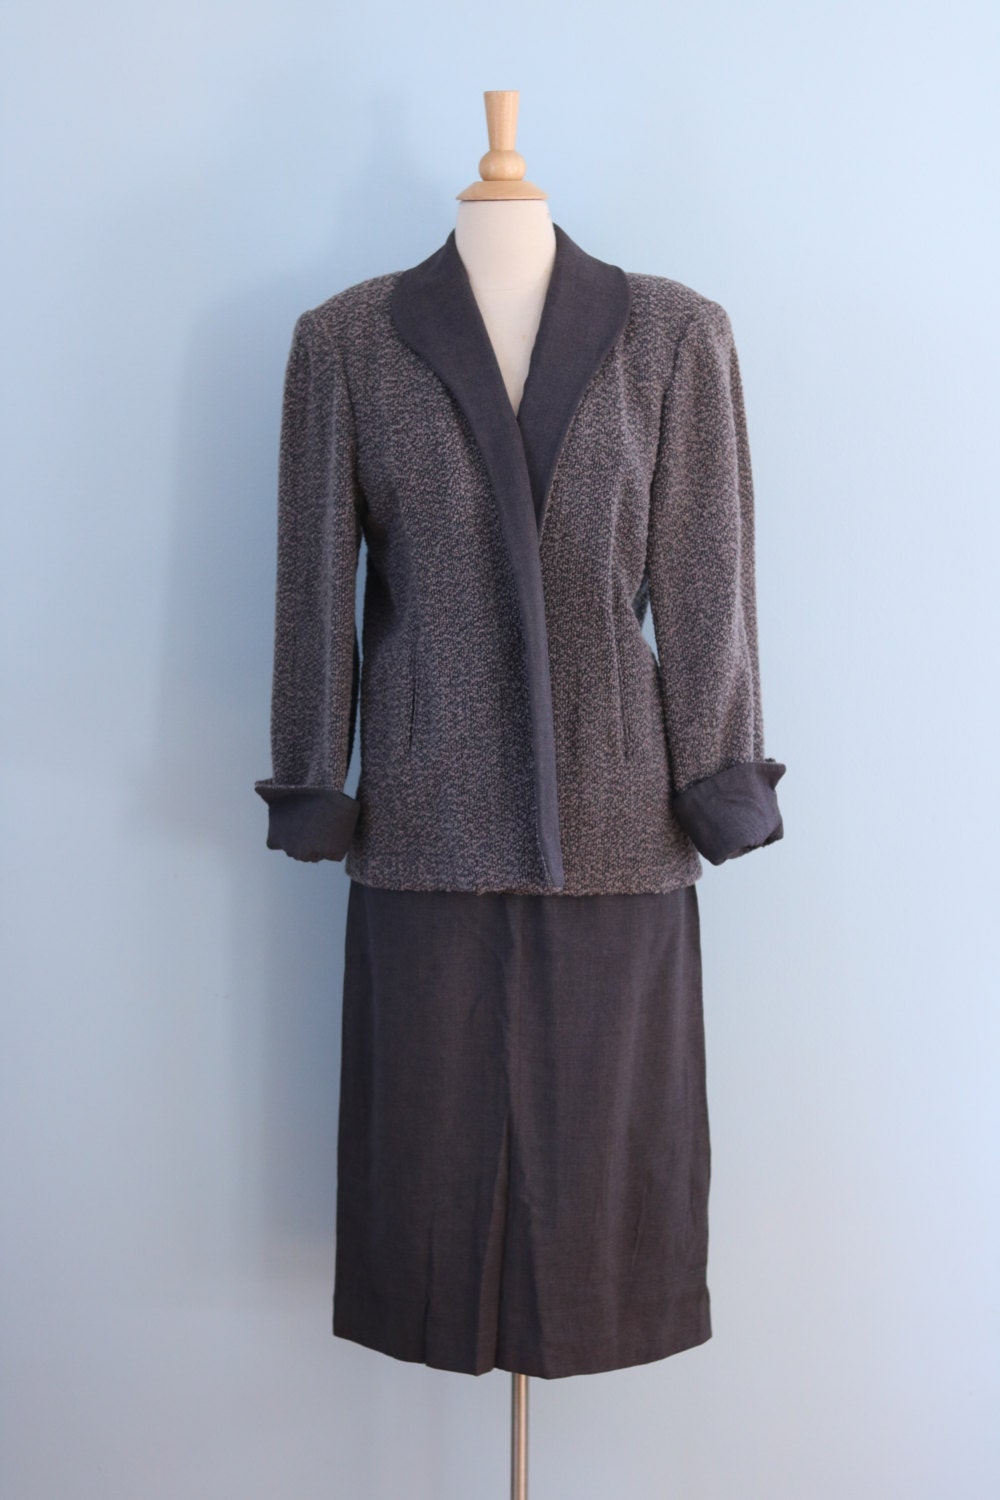 1940s wool tweed skirt suit / 40s nubby gray tweed jacket | Etsy